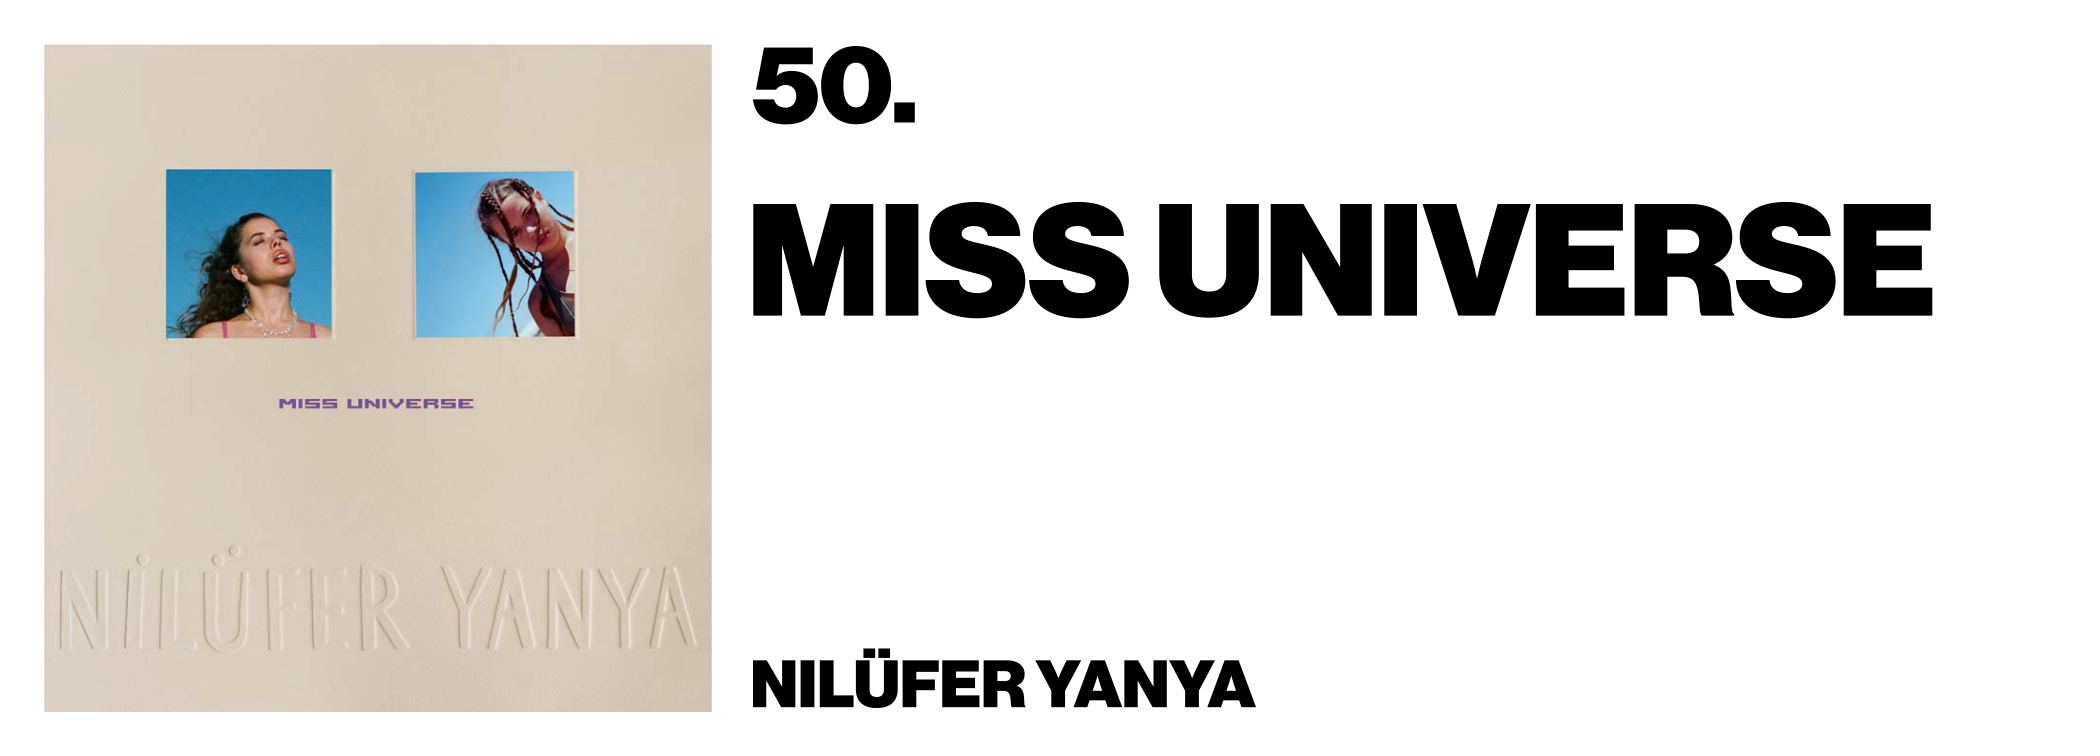 1575997772933-50-Nilufer-Yanya-Miss-Universe